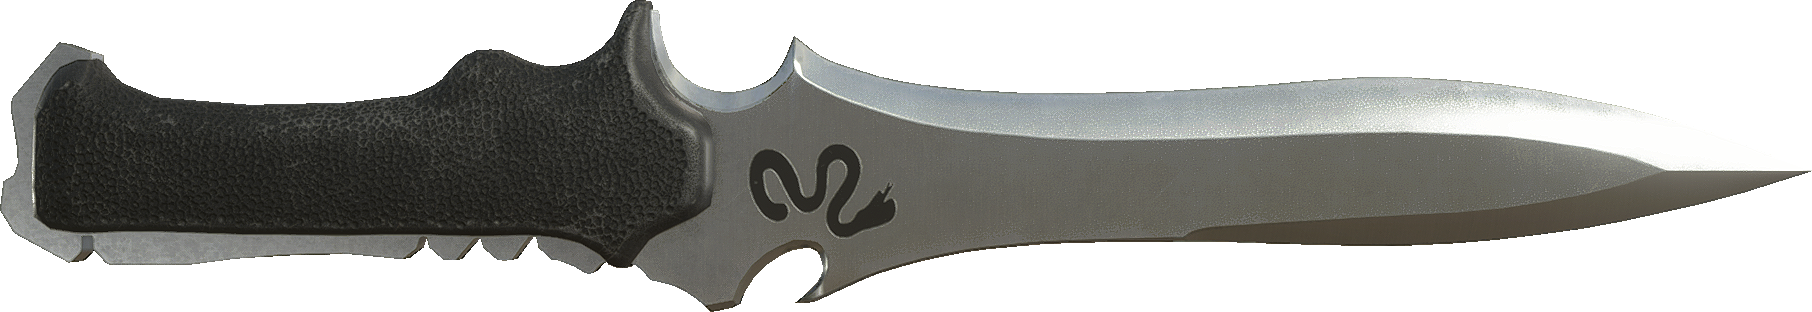 Krauser's knife from Resident Evil 4! : r/knives